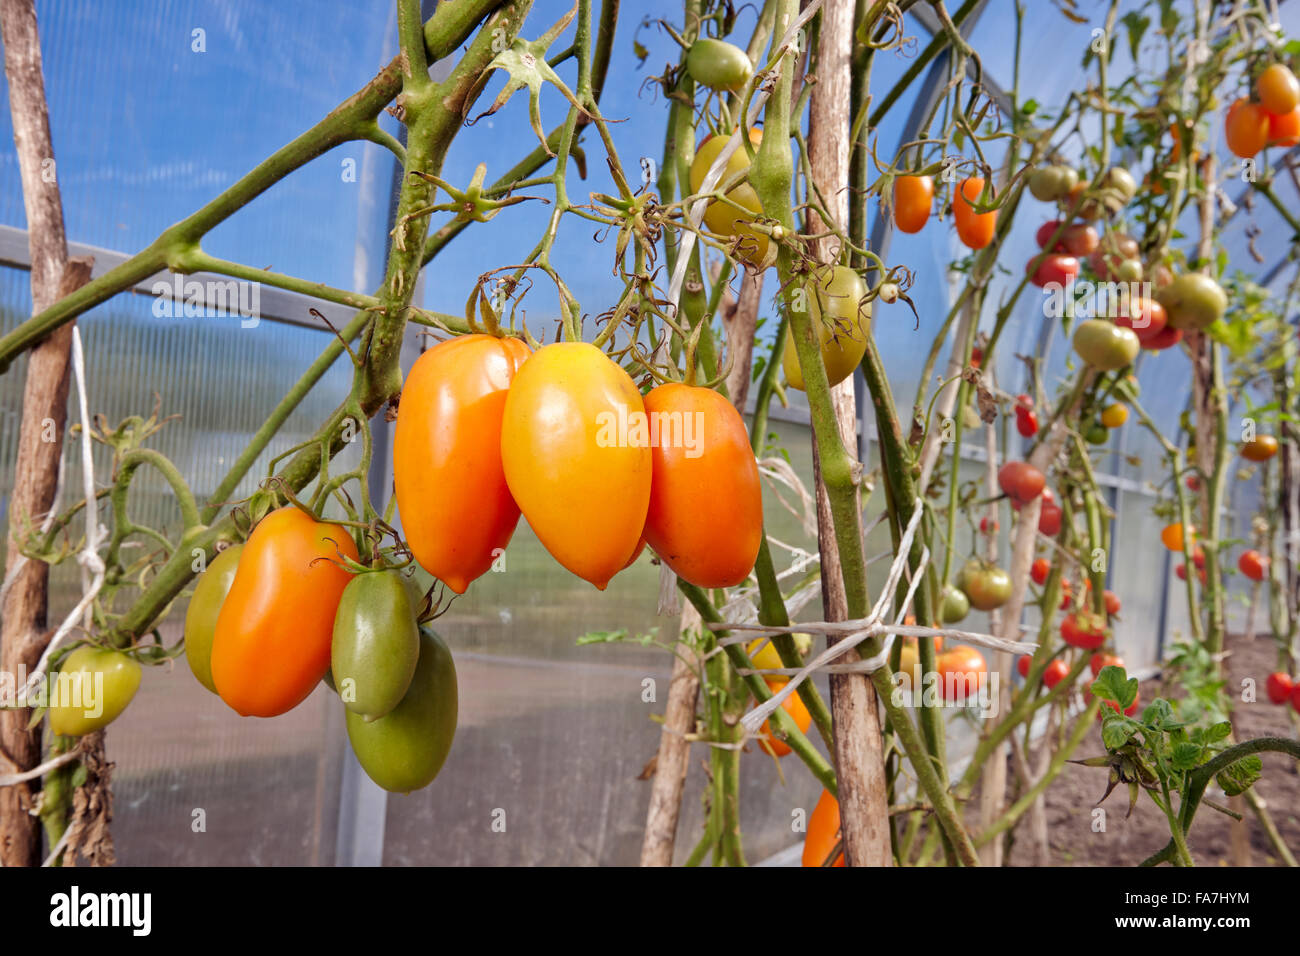 Tomates jaunes en serre biologique. Nom scientifique: Solanum lycopersicum. Région de Kaluga, Russie. Banque D'Images